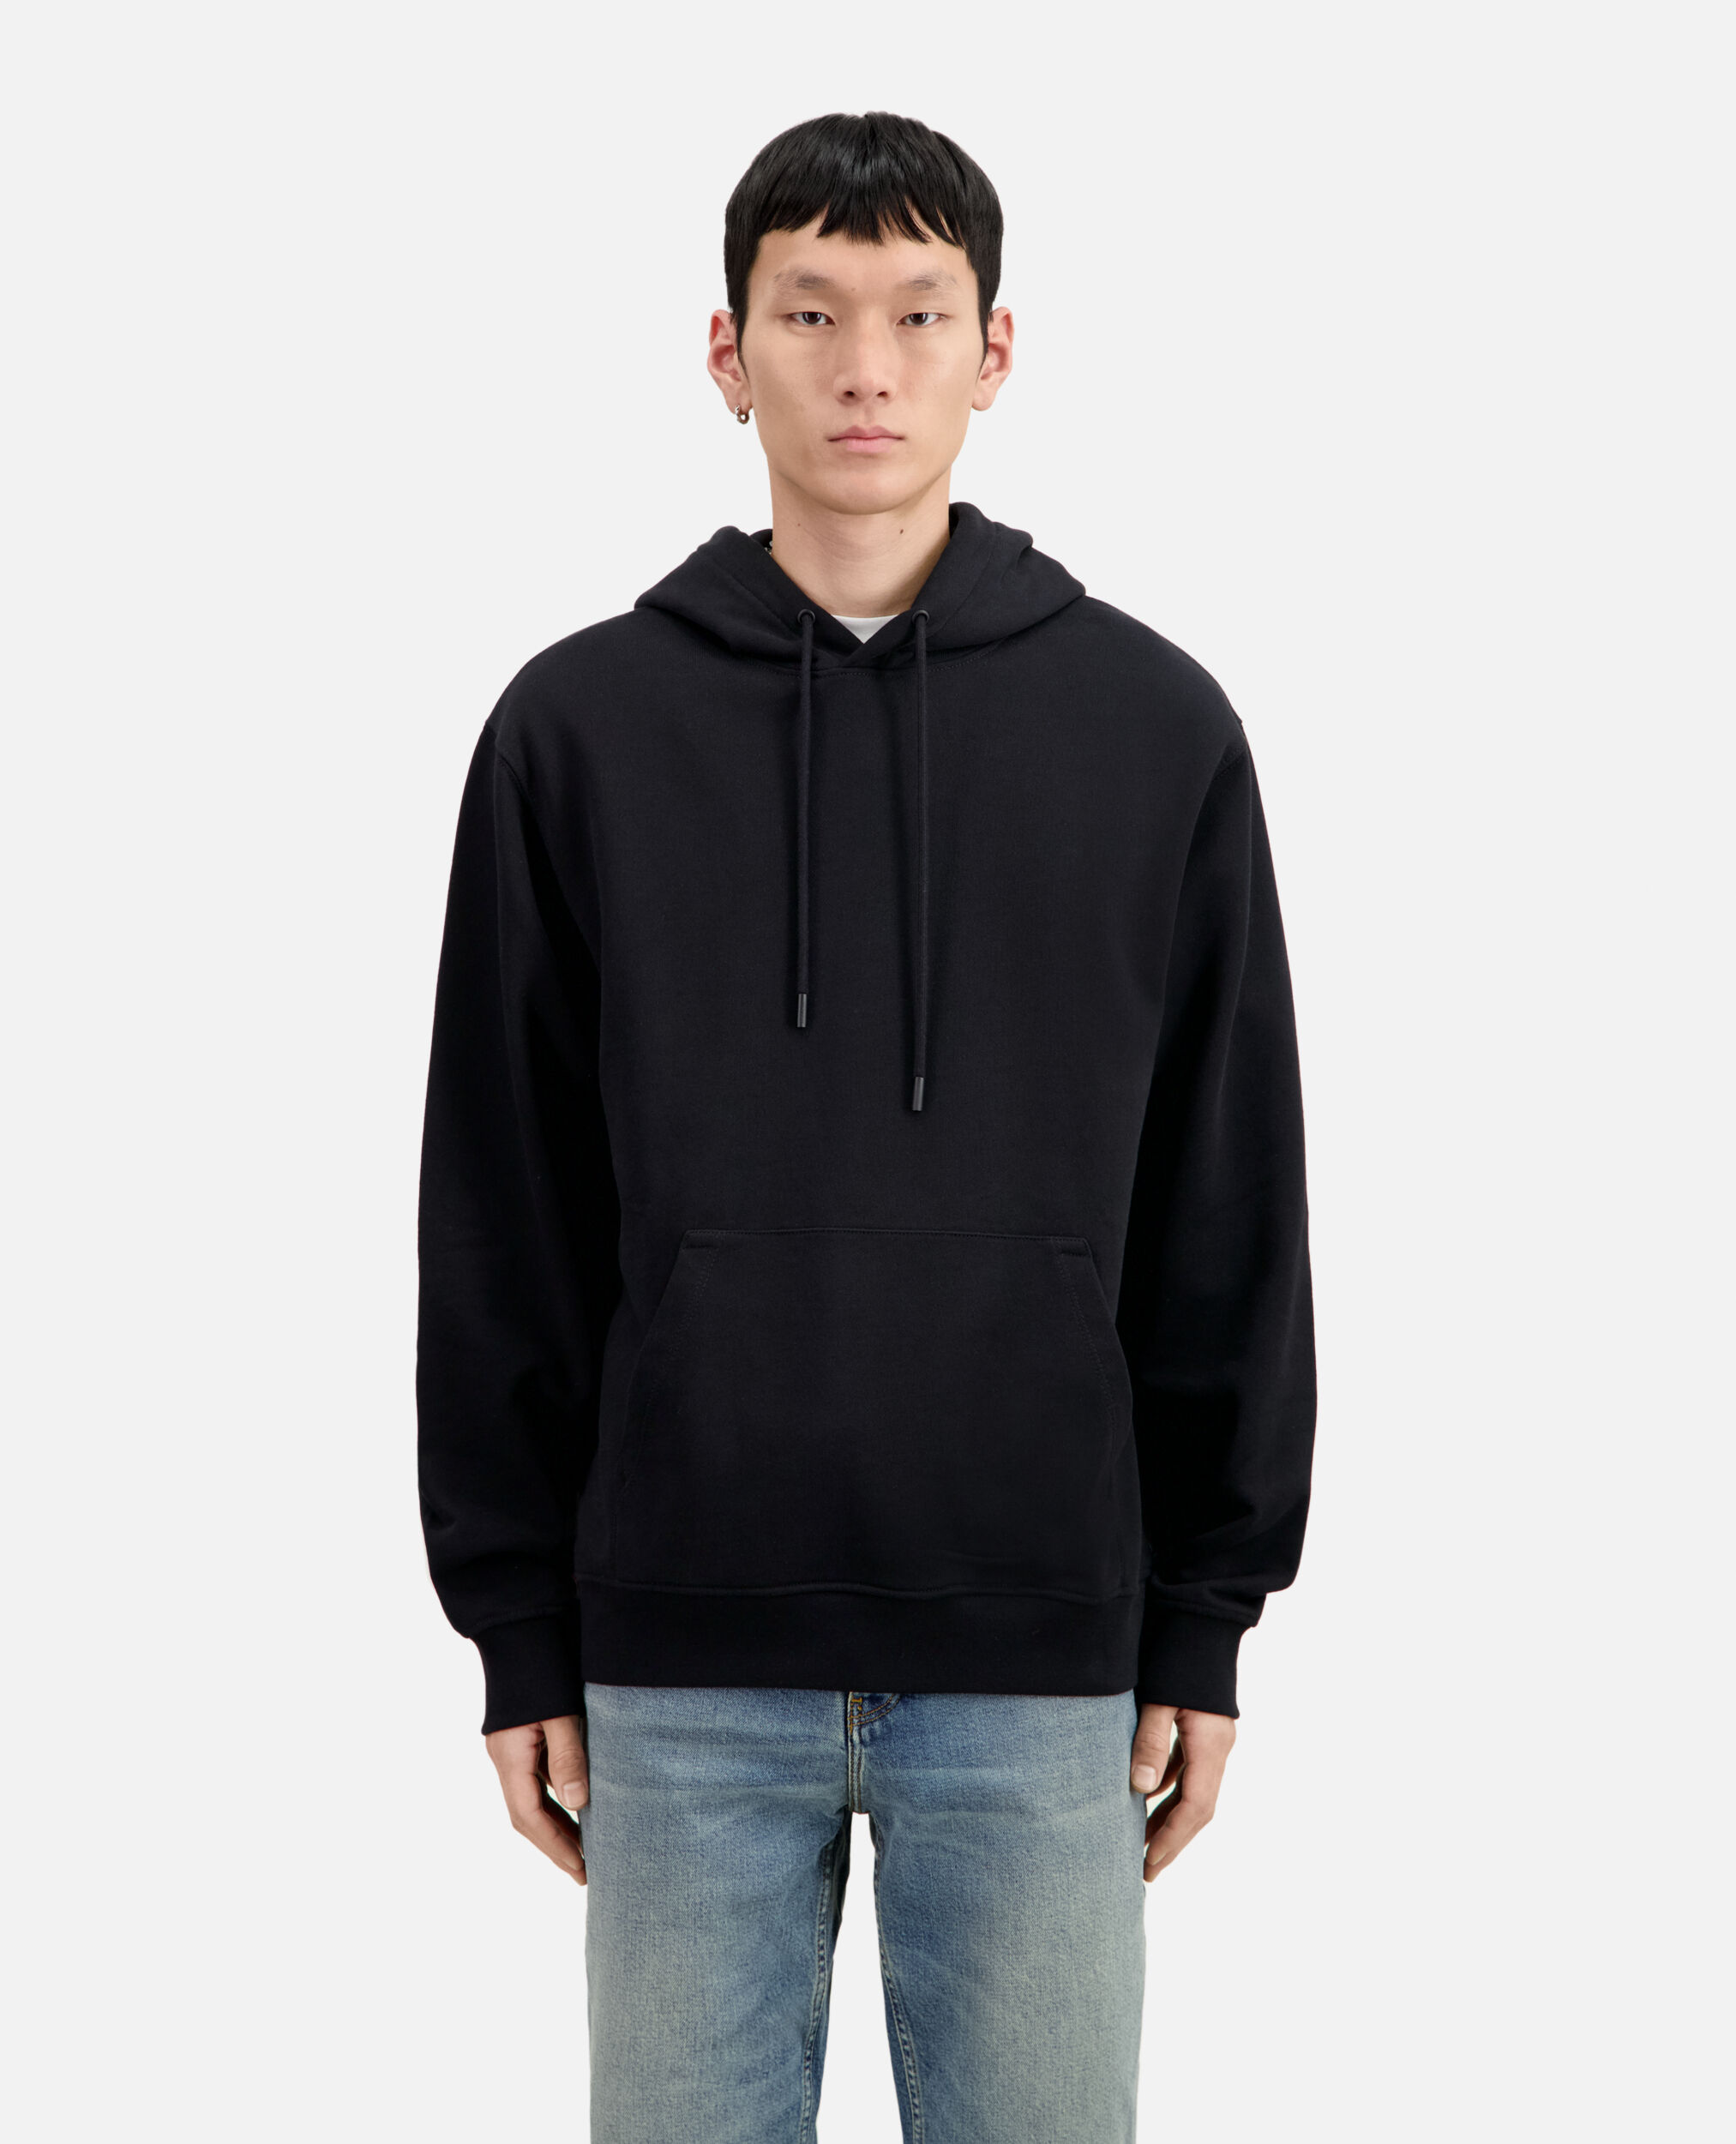 Black hoodie with Flower skull serigraphy, BLACK, hi-res image number null